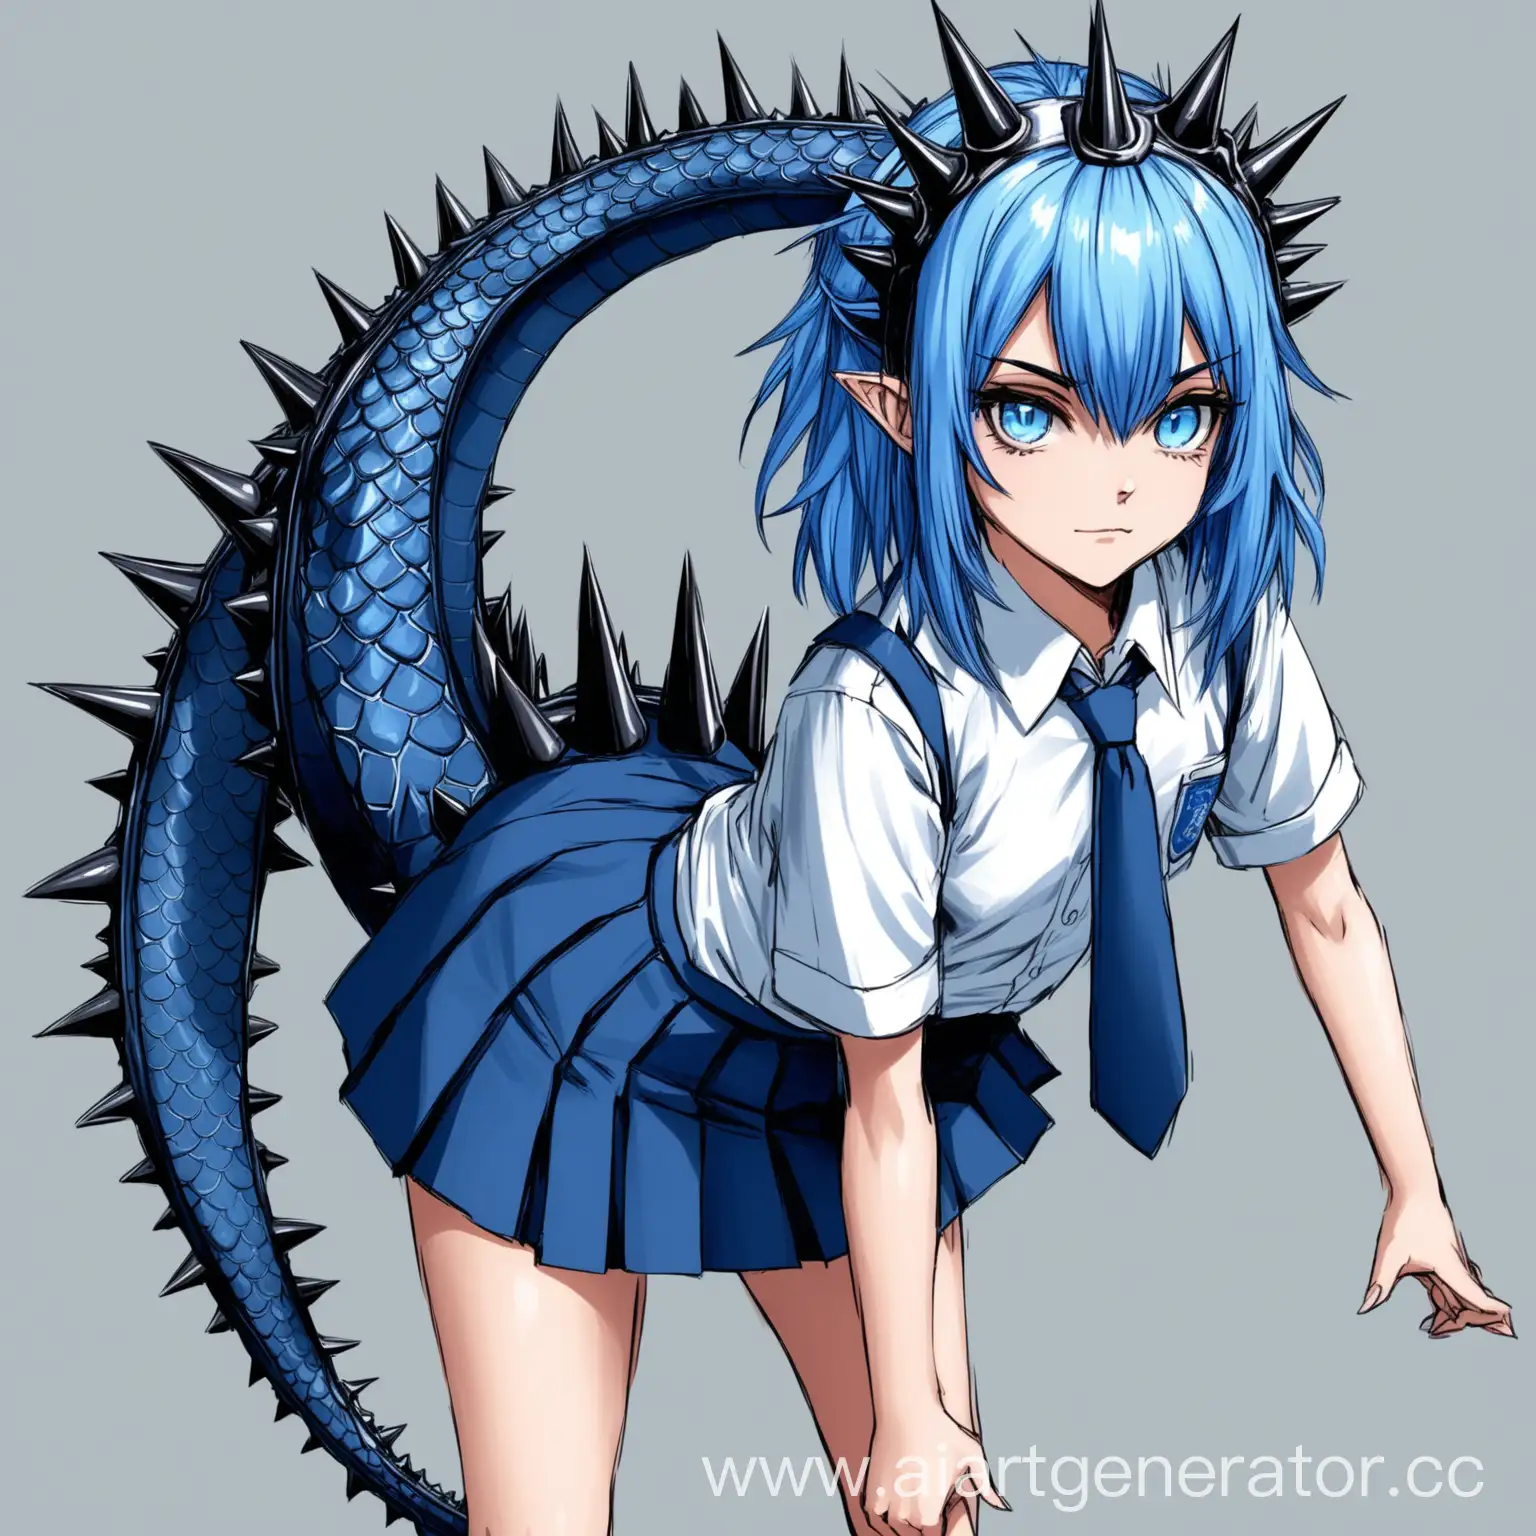 арт девочки с синими волосами синей юбкой школьная рубашки с галстуком ,с шипами в голове, и драконьим хвостом